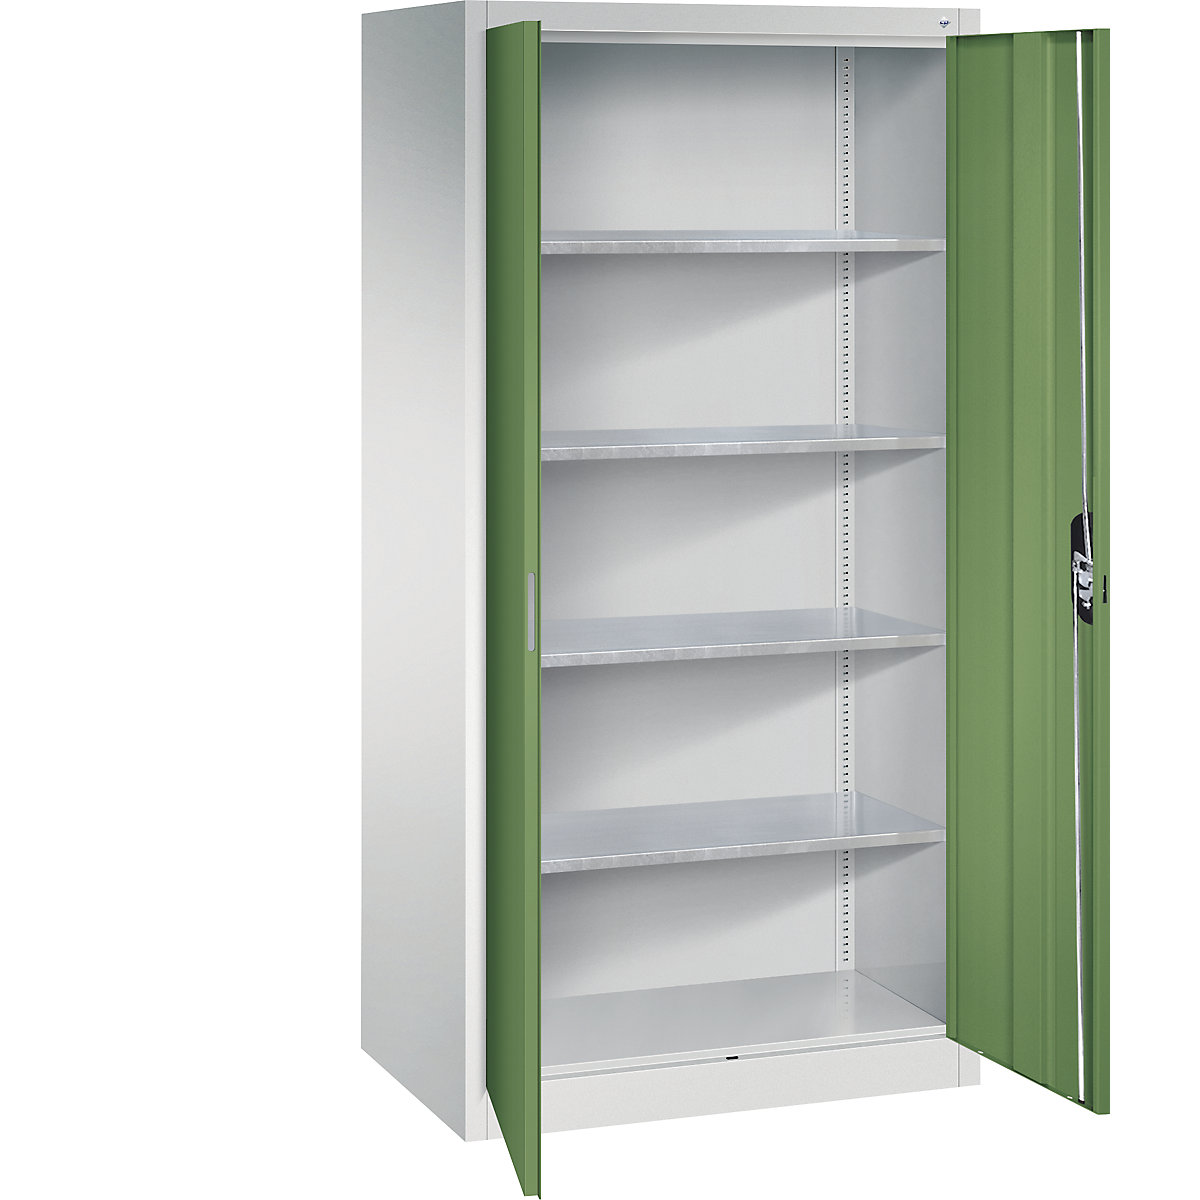 Workshop double door cupboard – C+P, HxWxD 1950 x 930 x 600 mm, light grey / reseda green-11